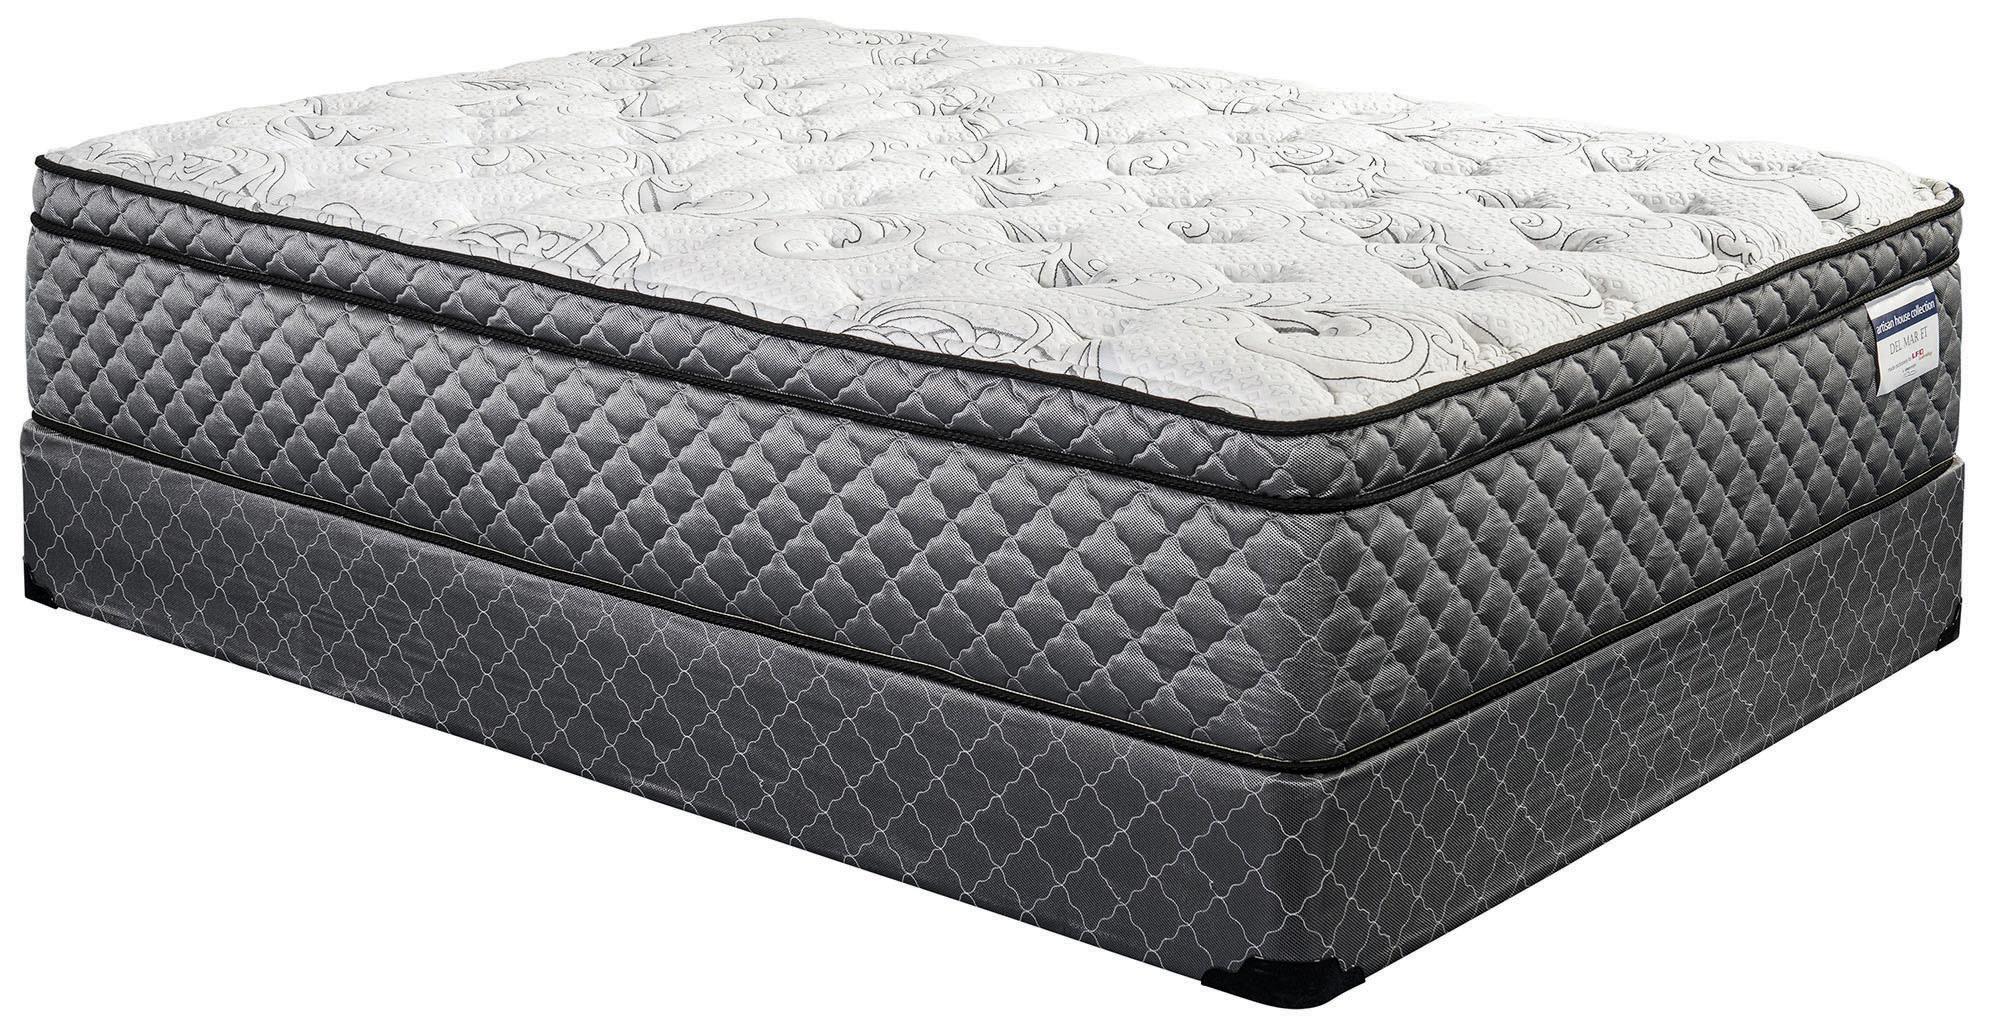 sleep design mattress warranty